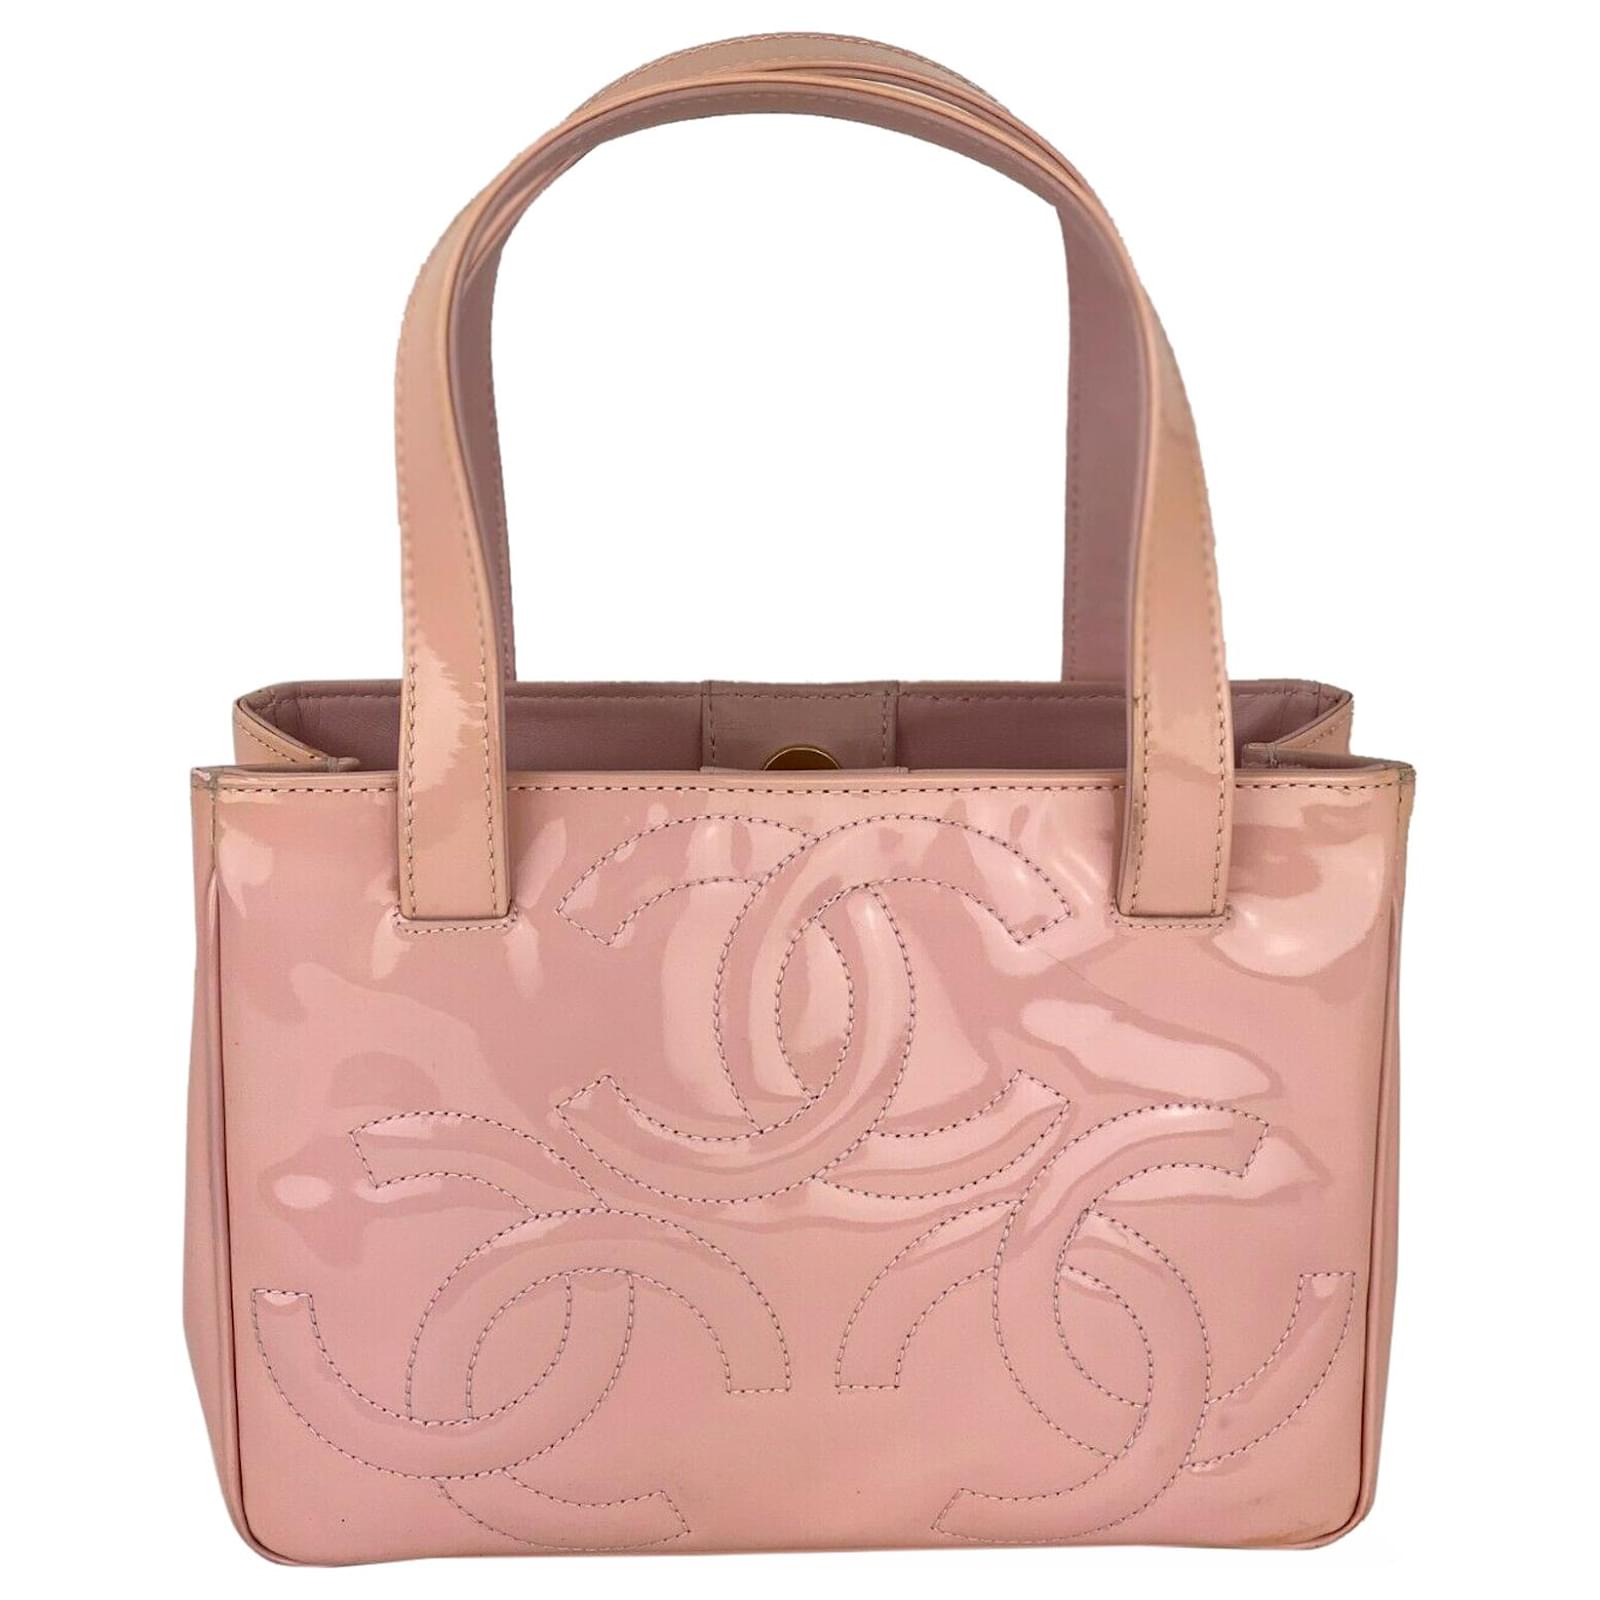 Chanel Bag Triple Cc Logo Small Pink Lackleder Tote Shoulder Bag